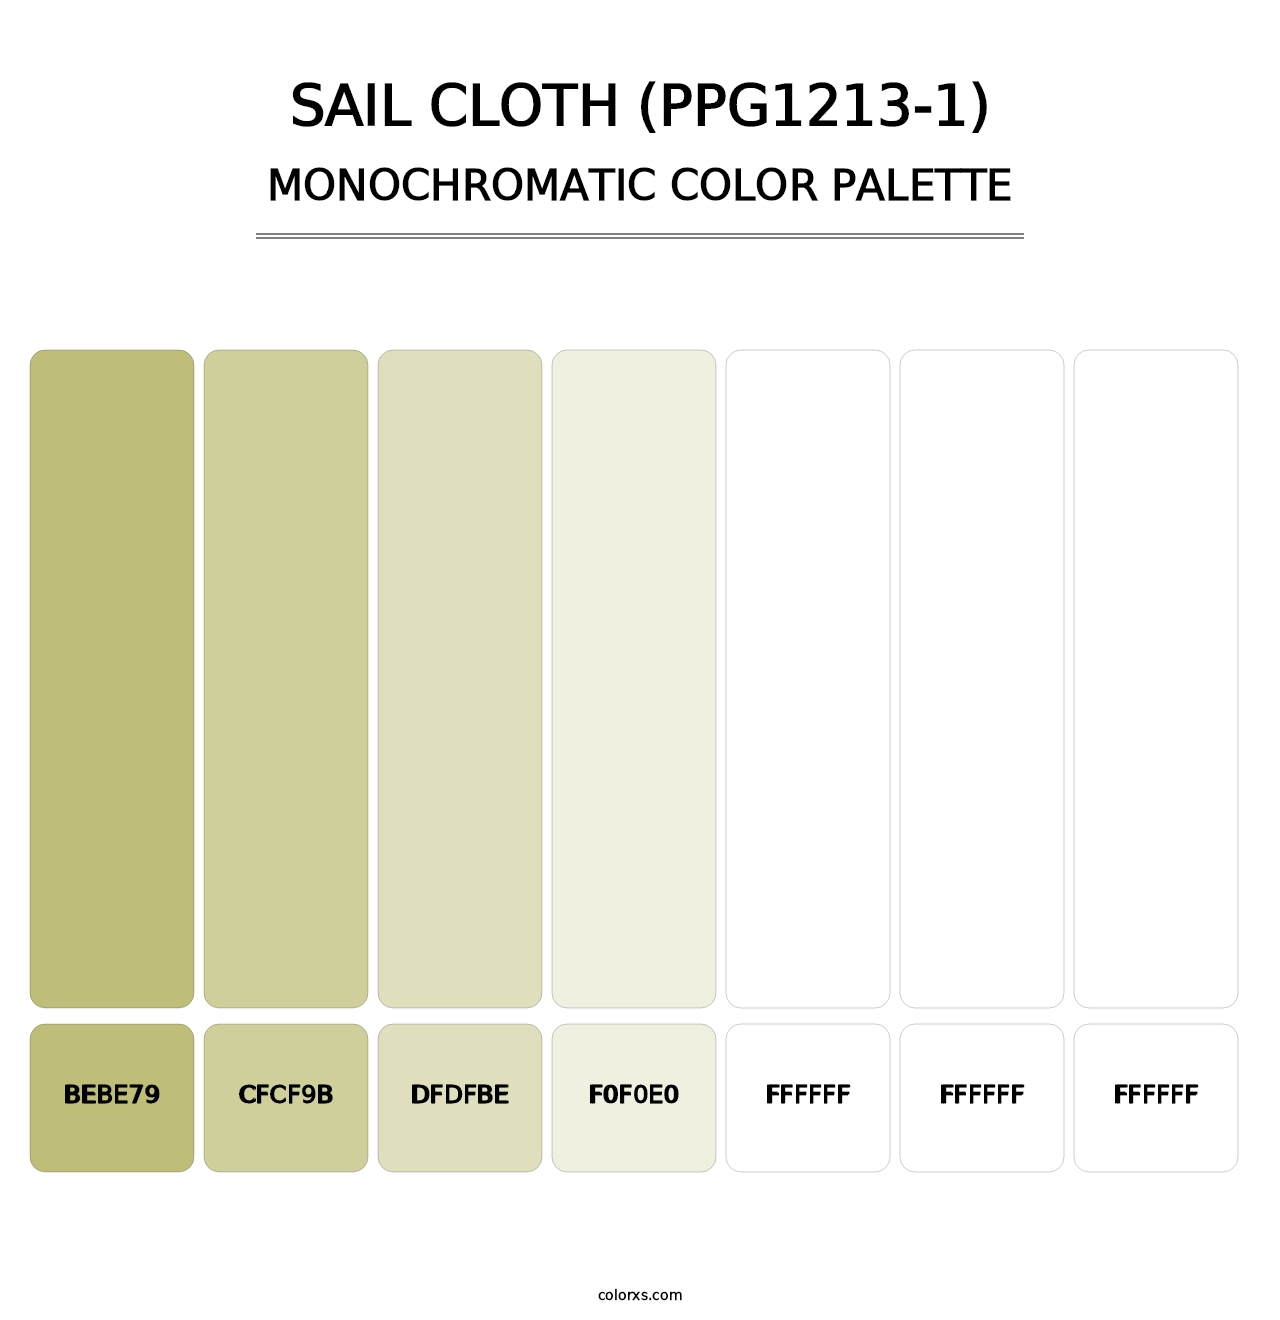 Sail Cloth (PPG1213-1) - Monochromatic Color Palette